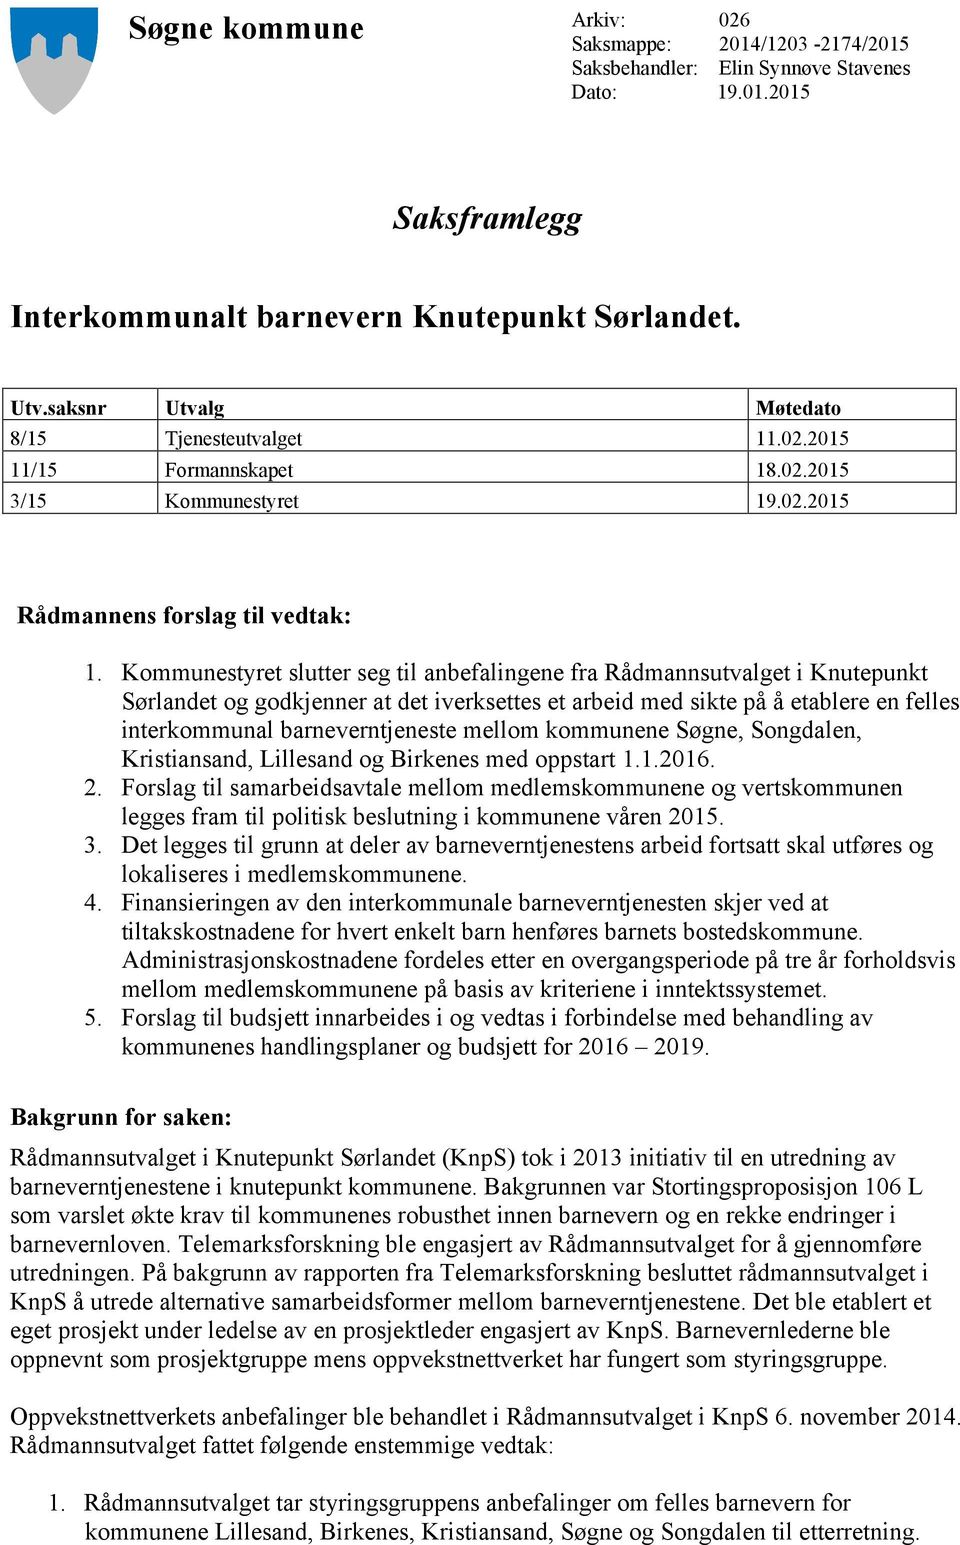 Kommunestyret slutter seg til anbefalingene fra Rådmannsutvalget i Knutepunkt Sørlandet og godkjenner at det iverksettes et arbeid med sikte på å etablere en felles interkommunal barneverntjeneste